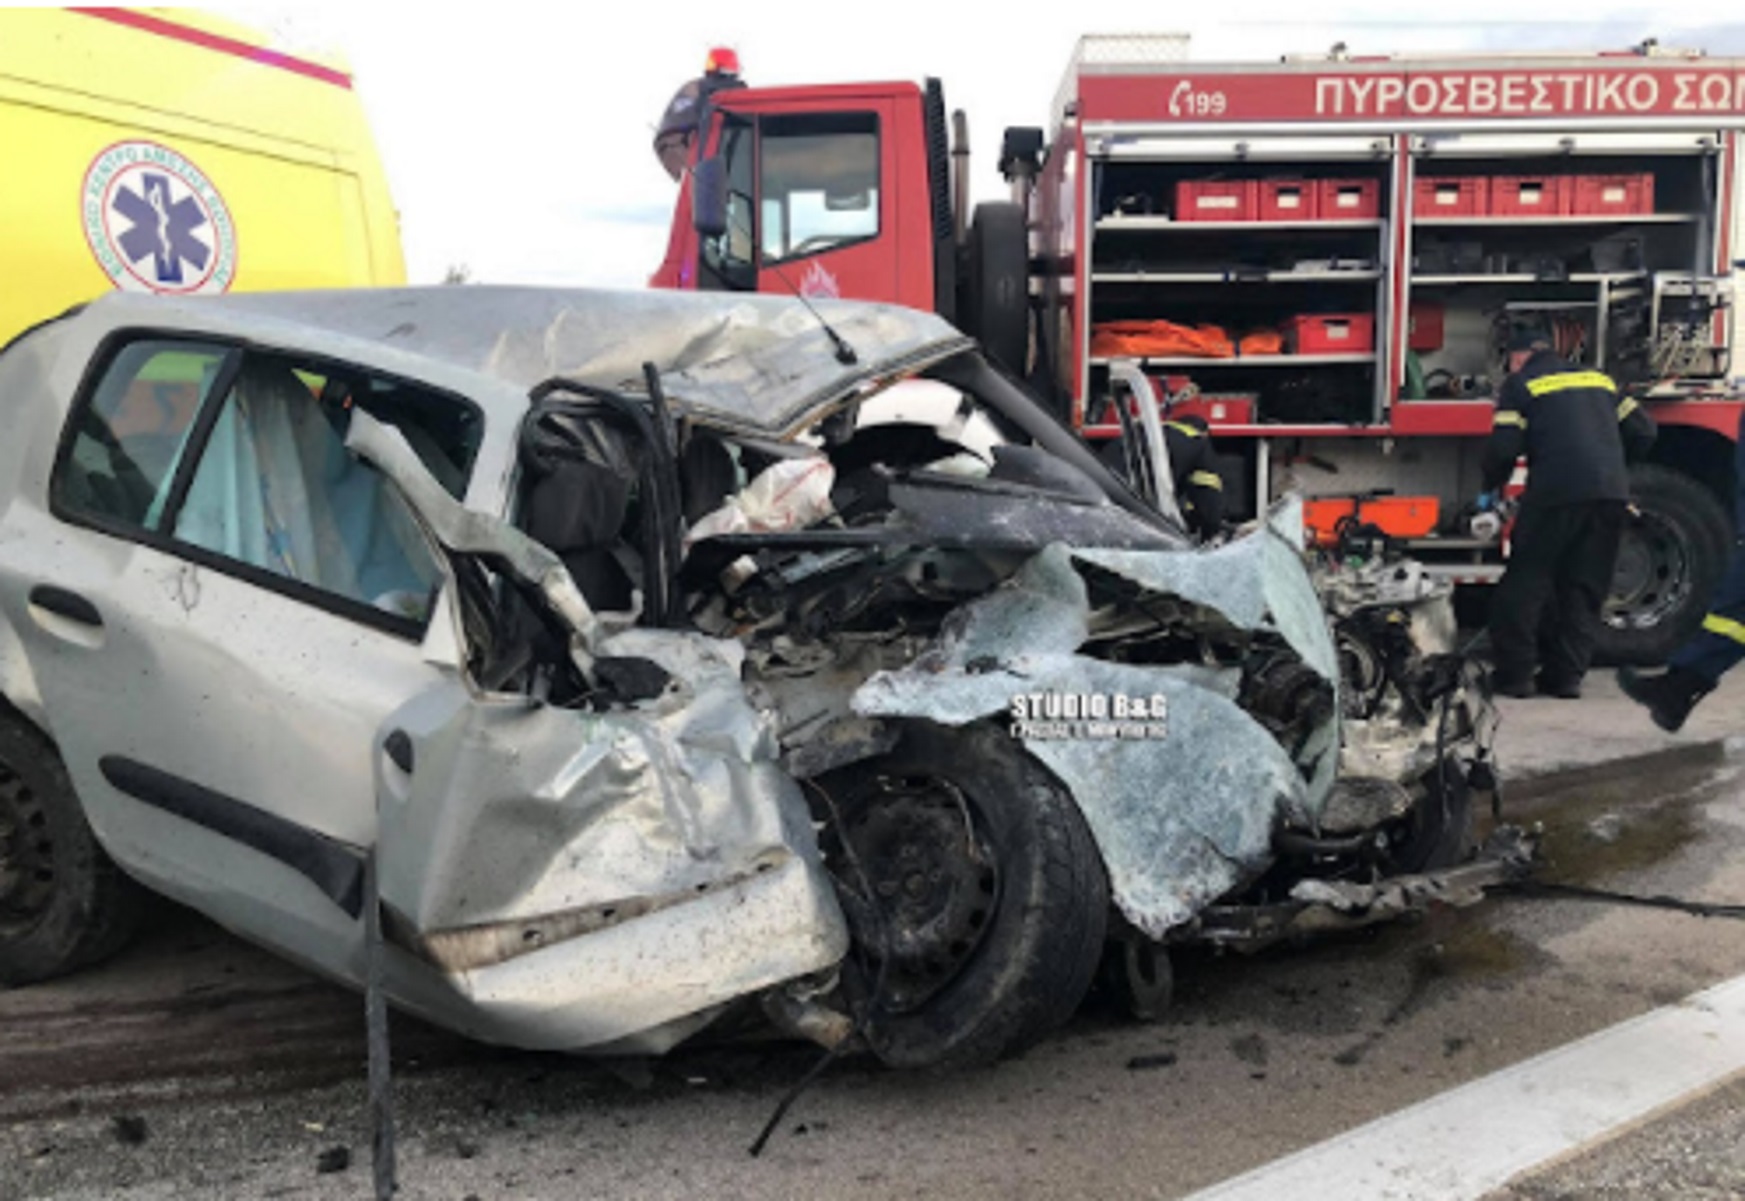 Τροχαίο με τραυματίες στην Αργολίδα – Αυτοκίνητο συγκρούστηκε μετωπικά με φορτηγό